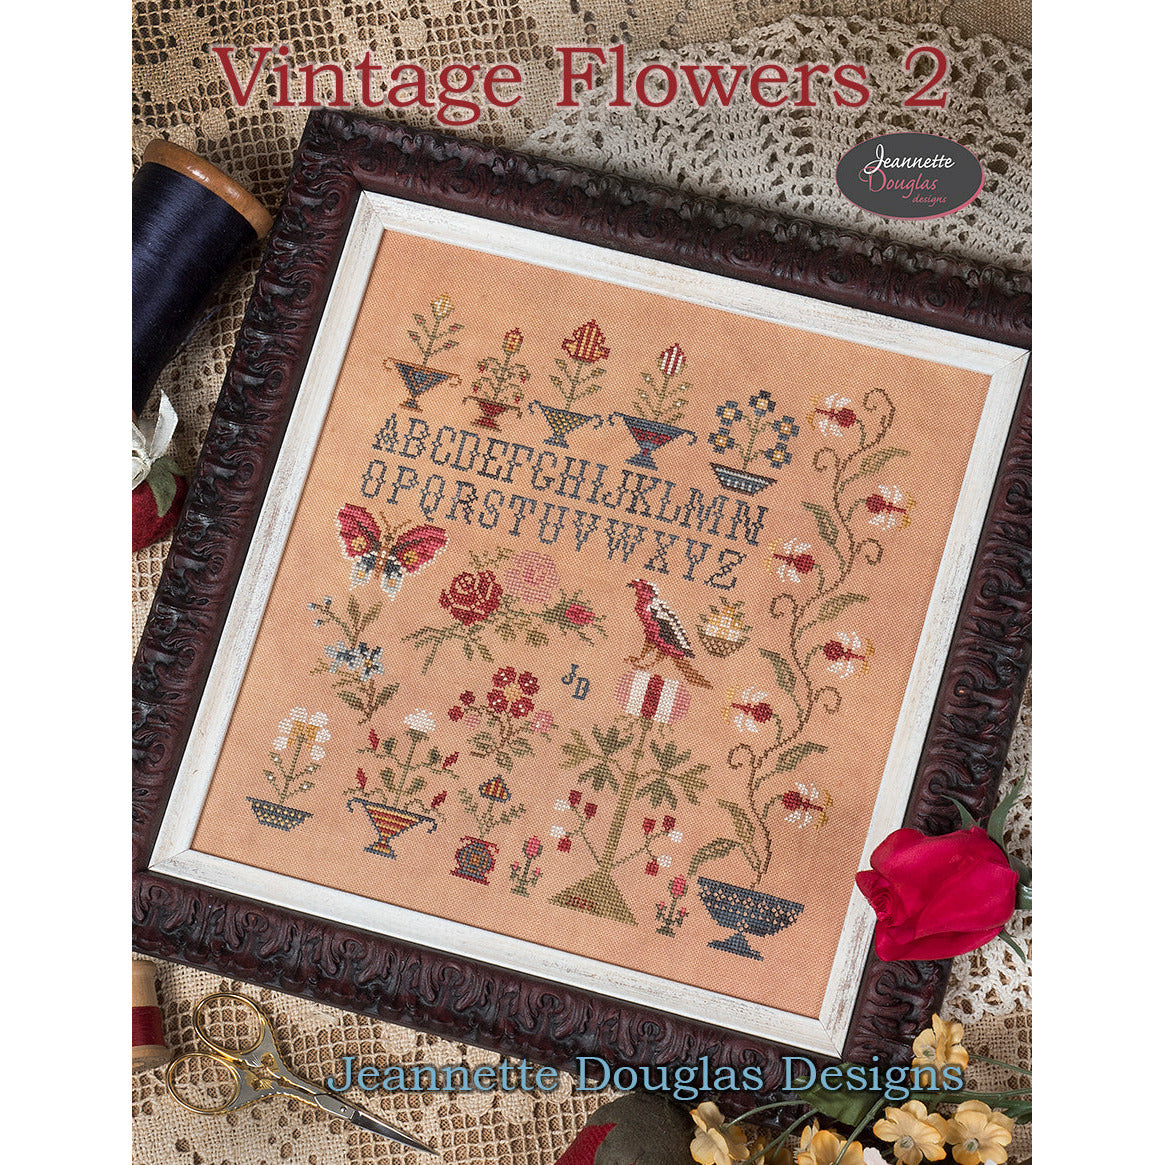 Jeannette Douglas Designs ~ Vintage Flowers 2 Pattern